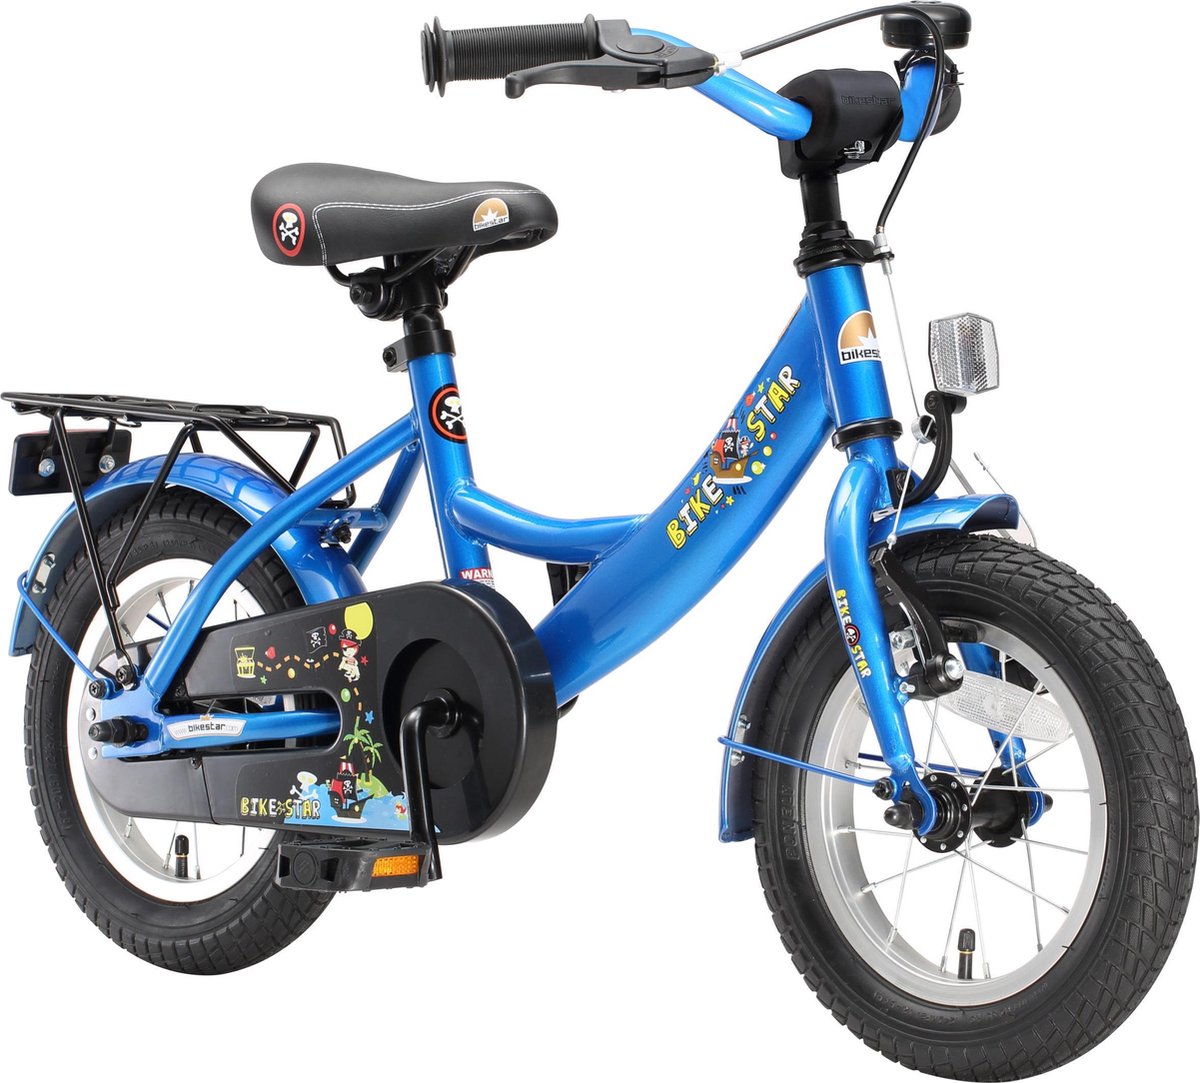 Bikestar 12 inch Classic kinderfiets blauw